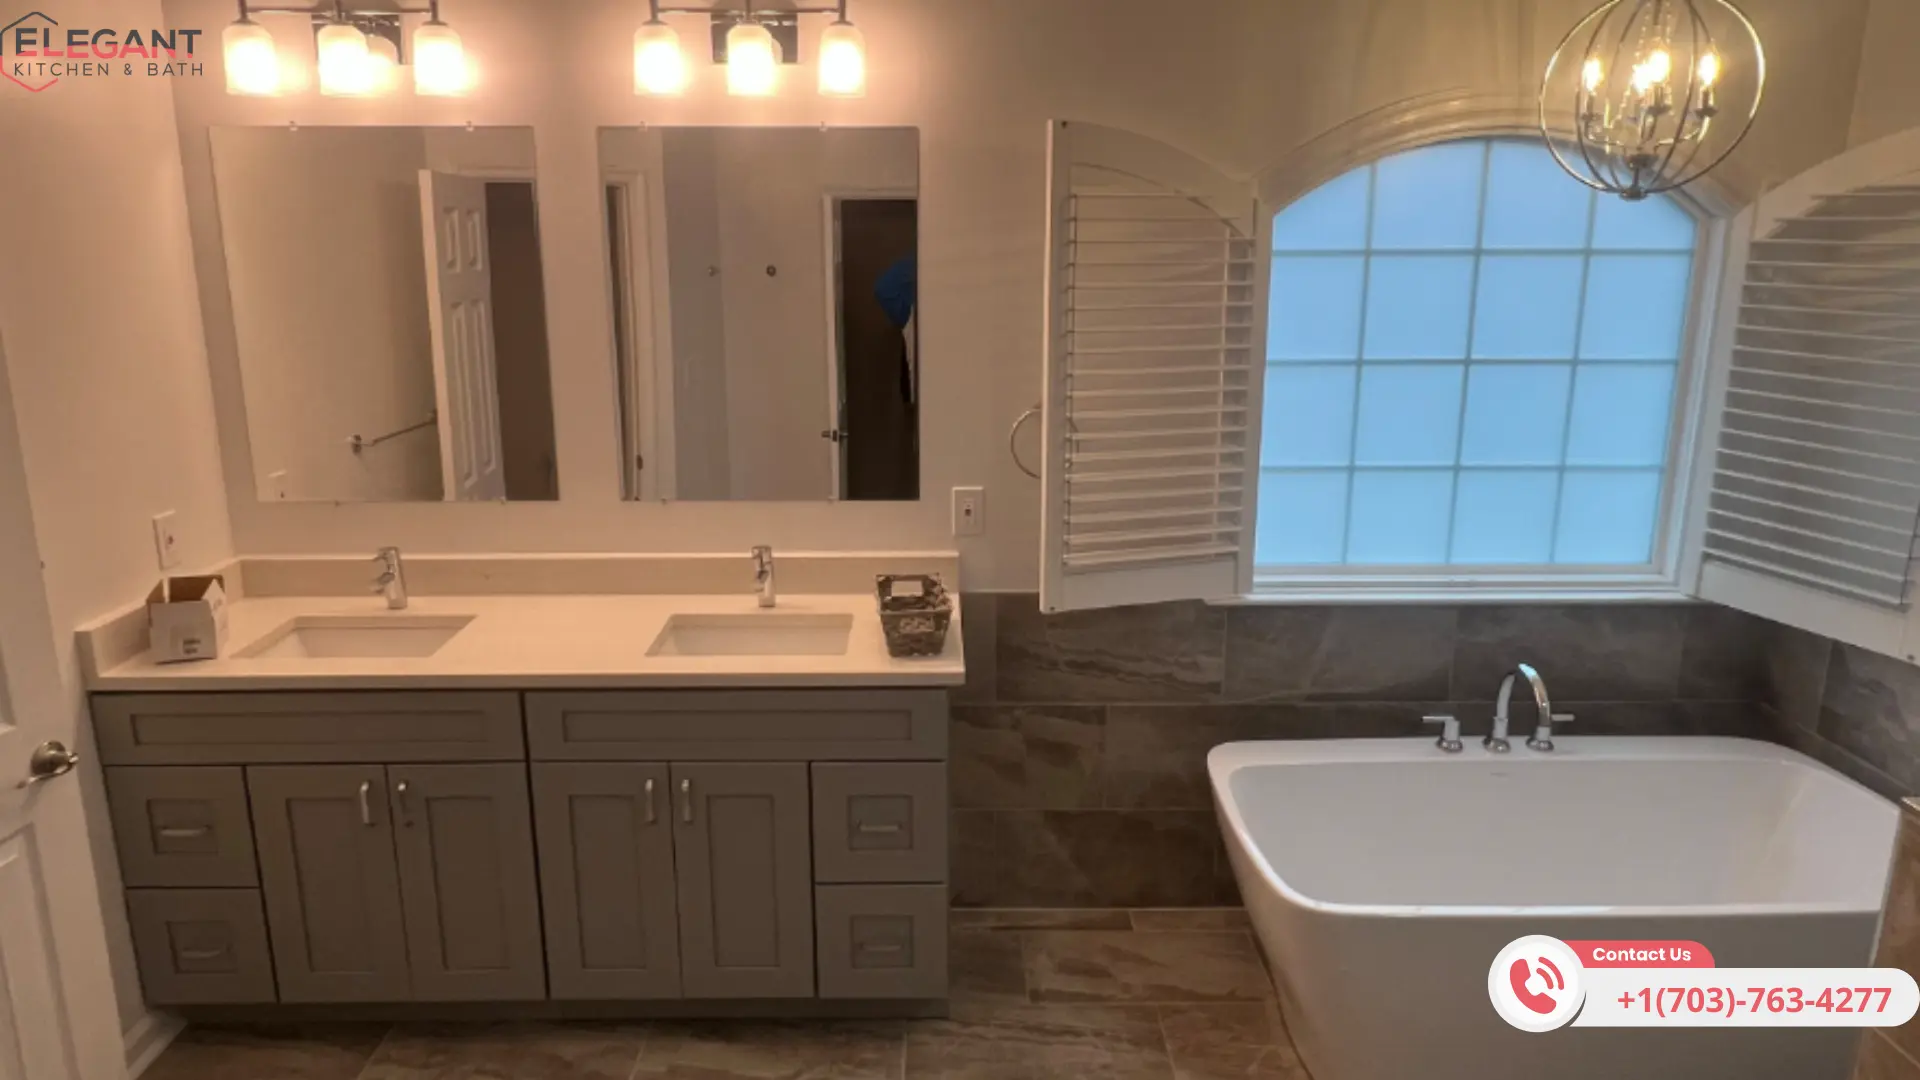 expert-lighting in bathroom remodeling